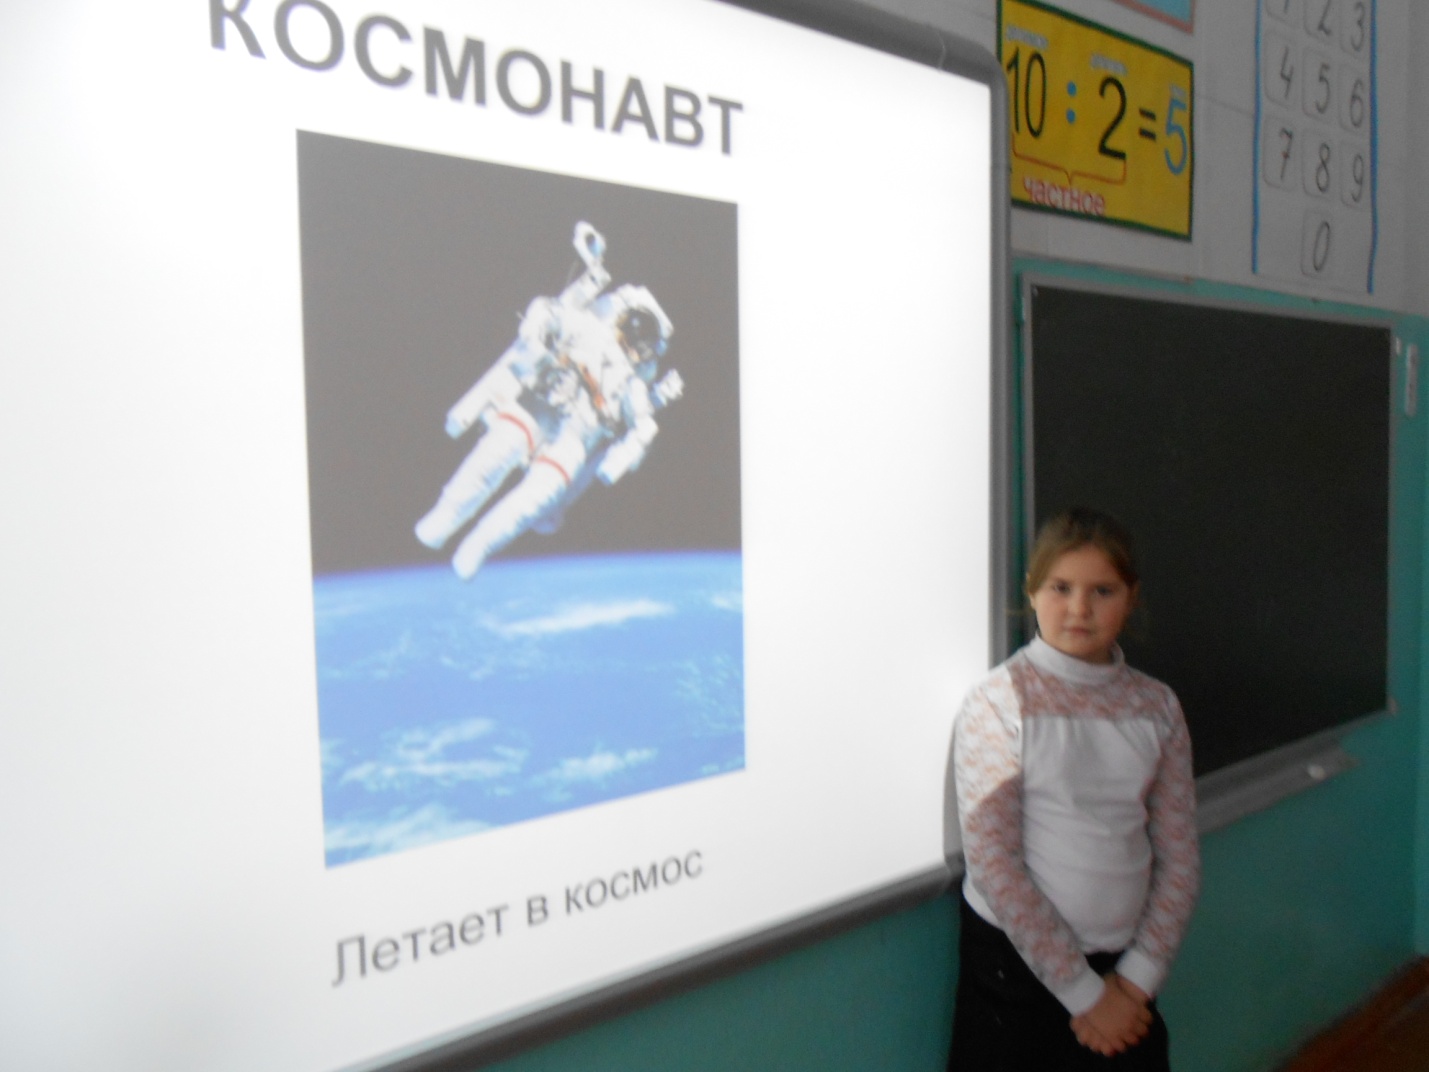 Интегрированный урок русского языка и окруgающего мира(2класс)